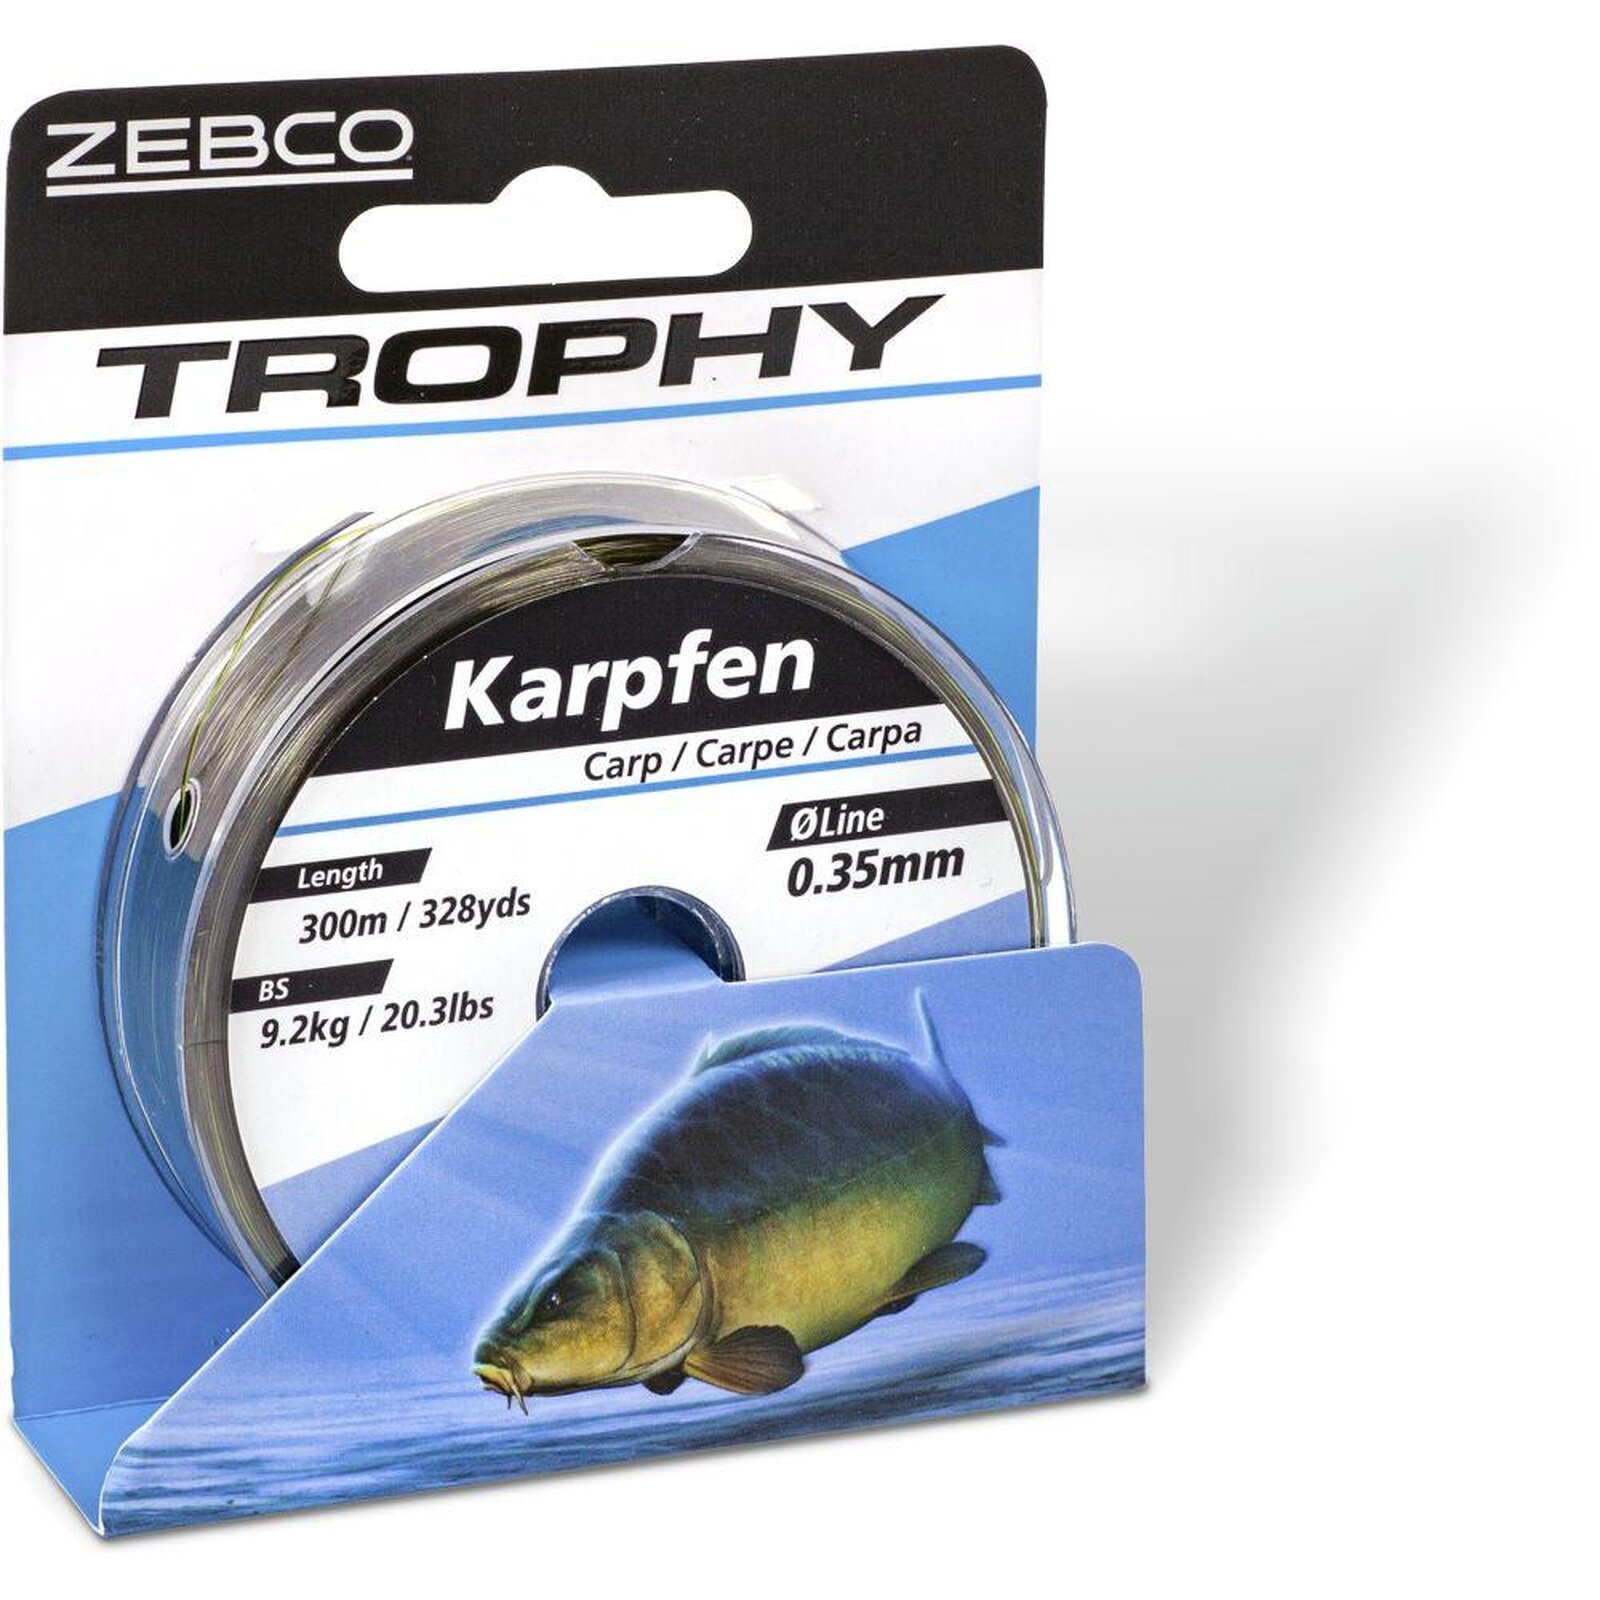 Zebco Trophy Karpfen 300m camou-dunkel 0,35mm | 9,20kg